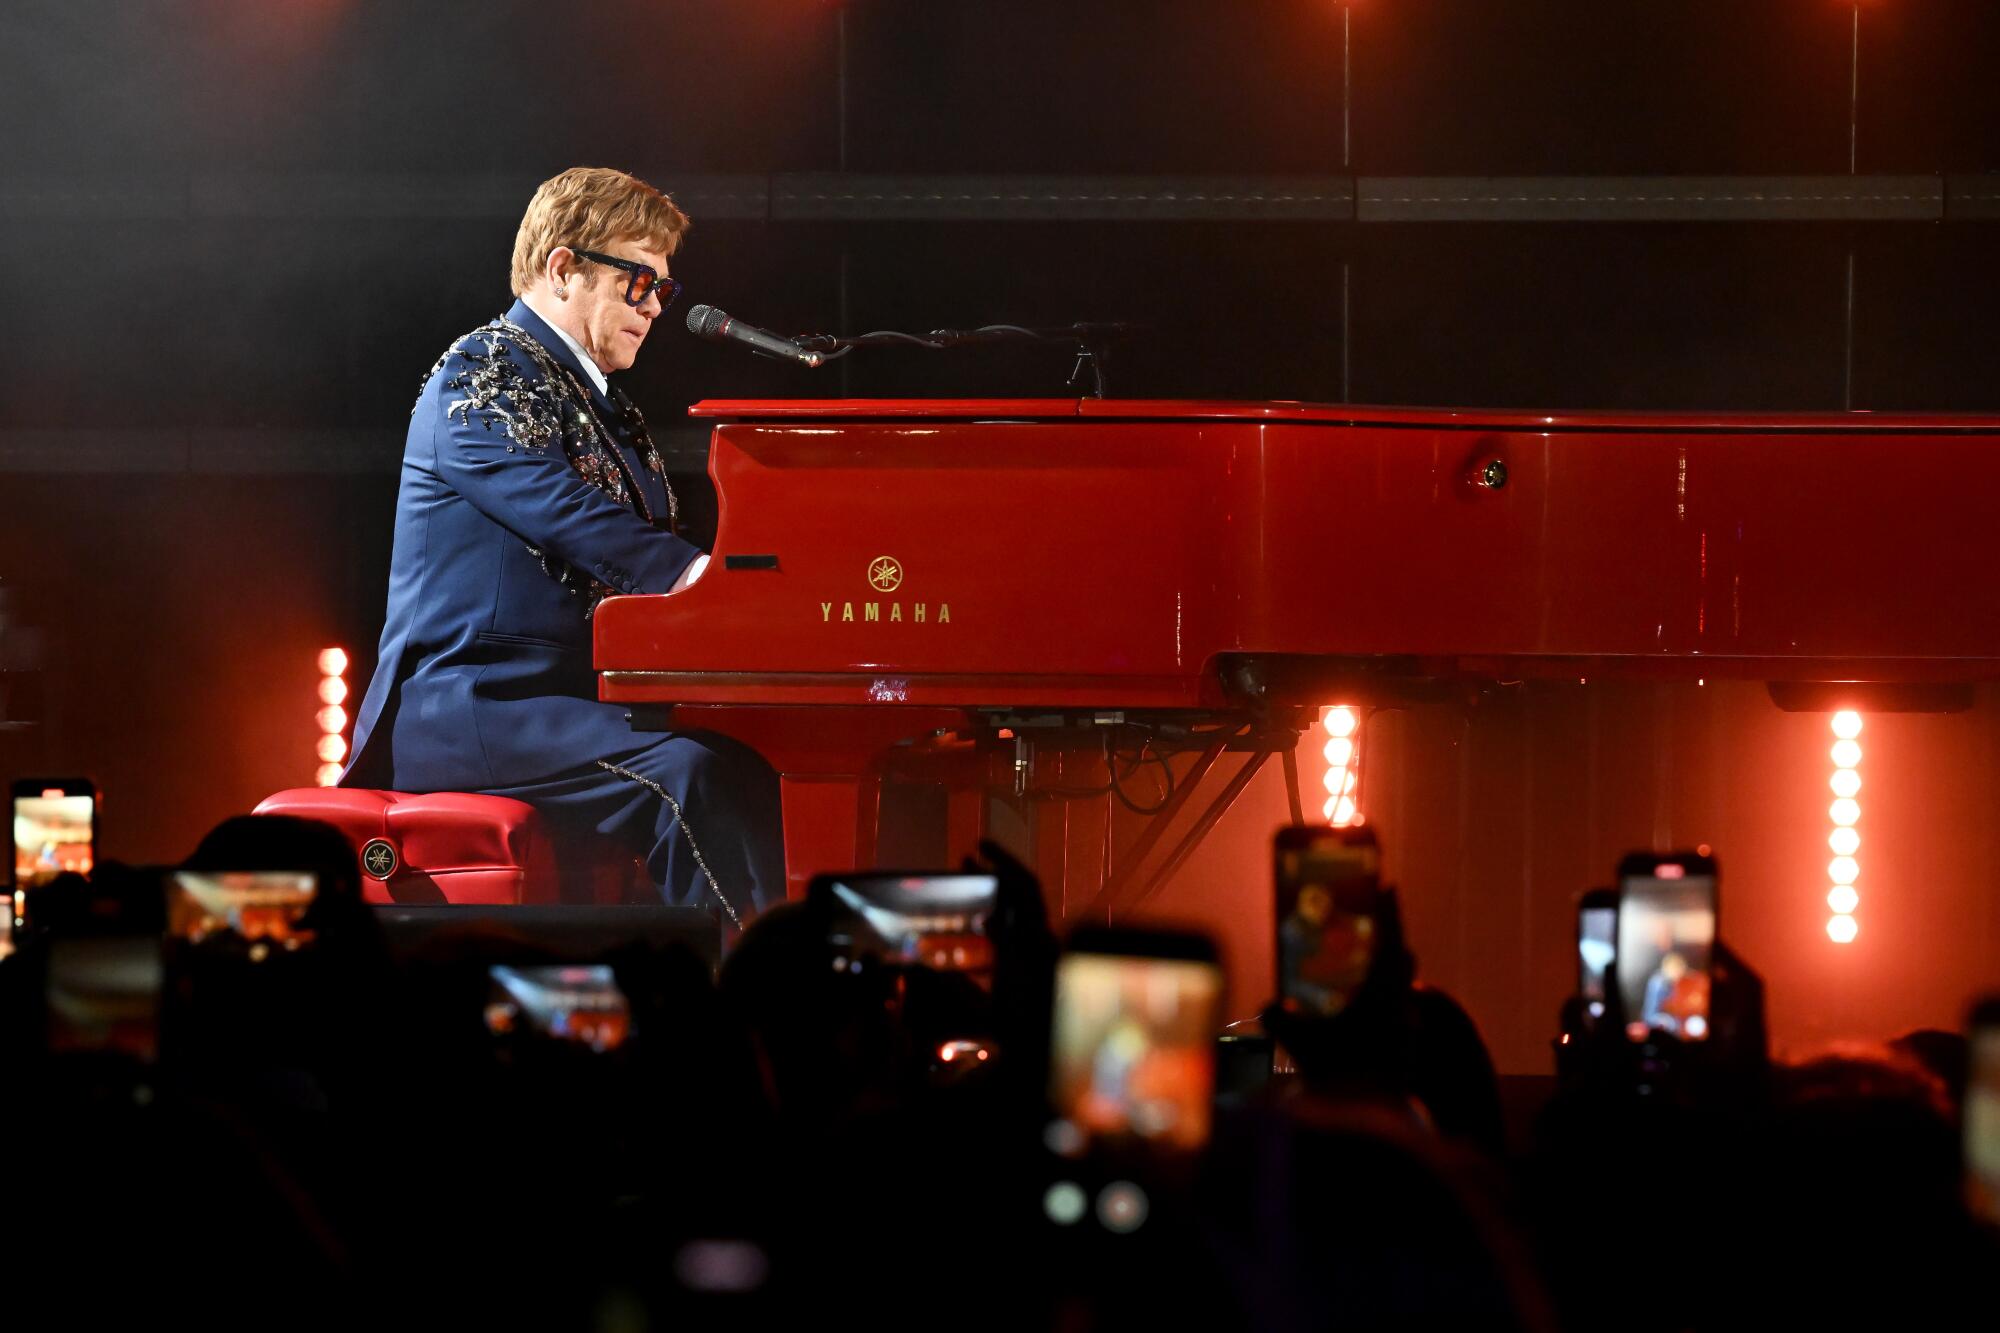 Elton John at a red piano